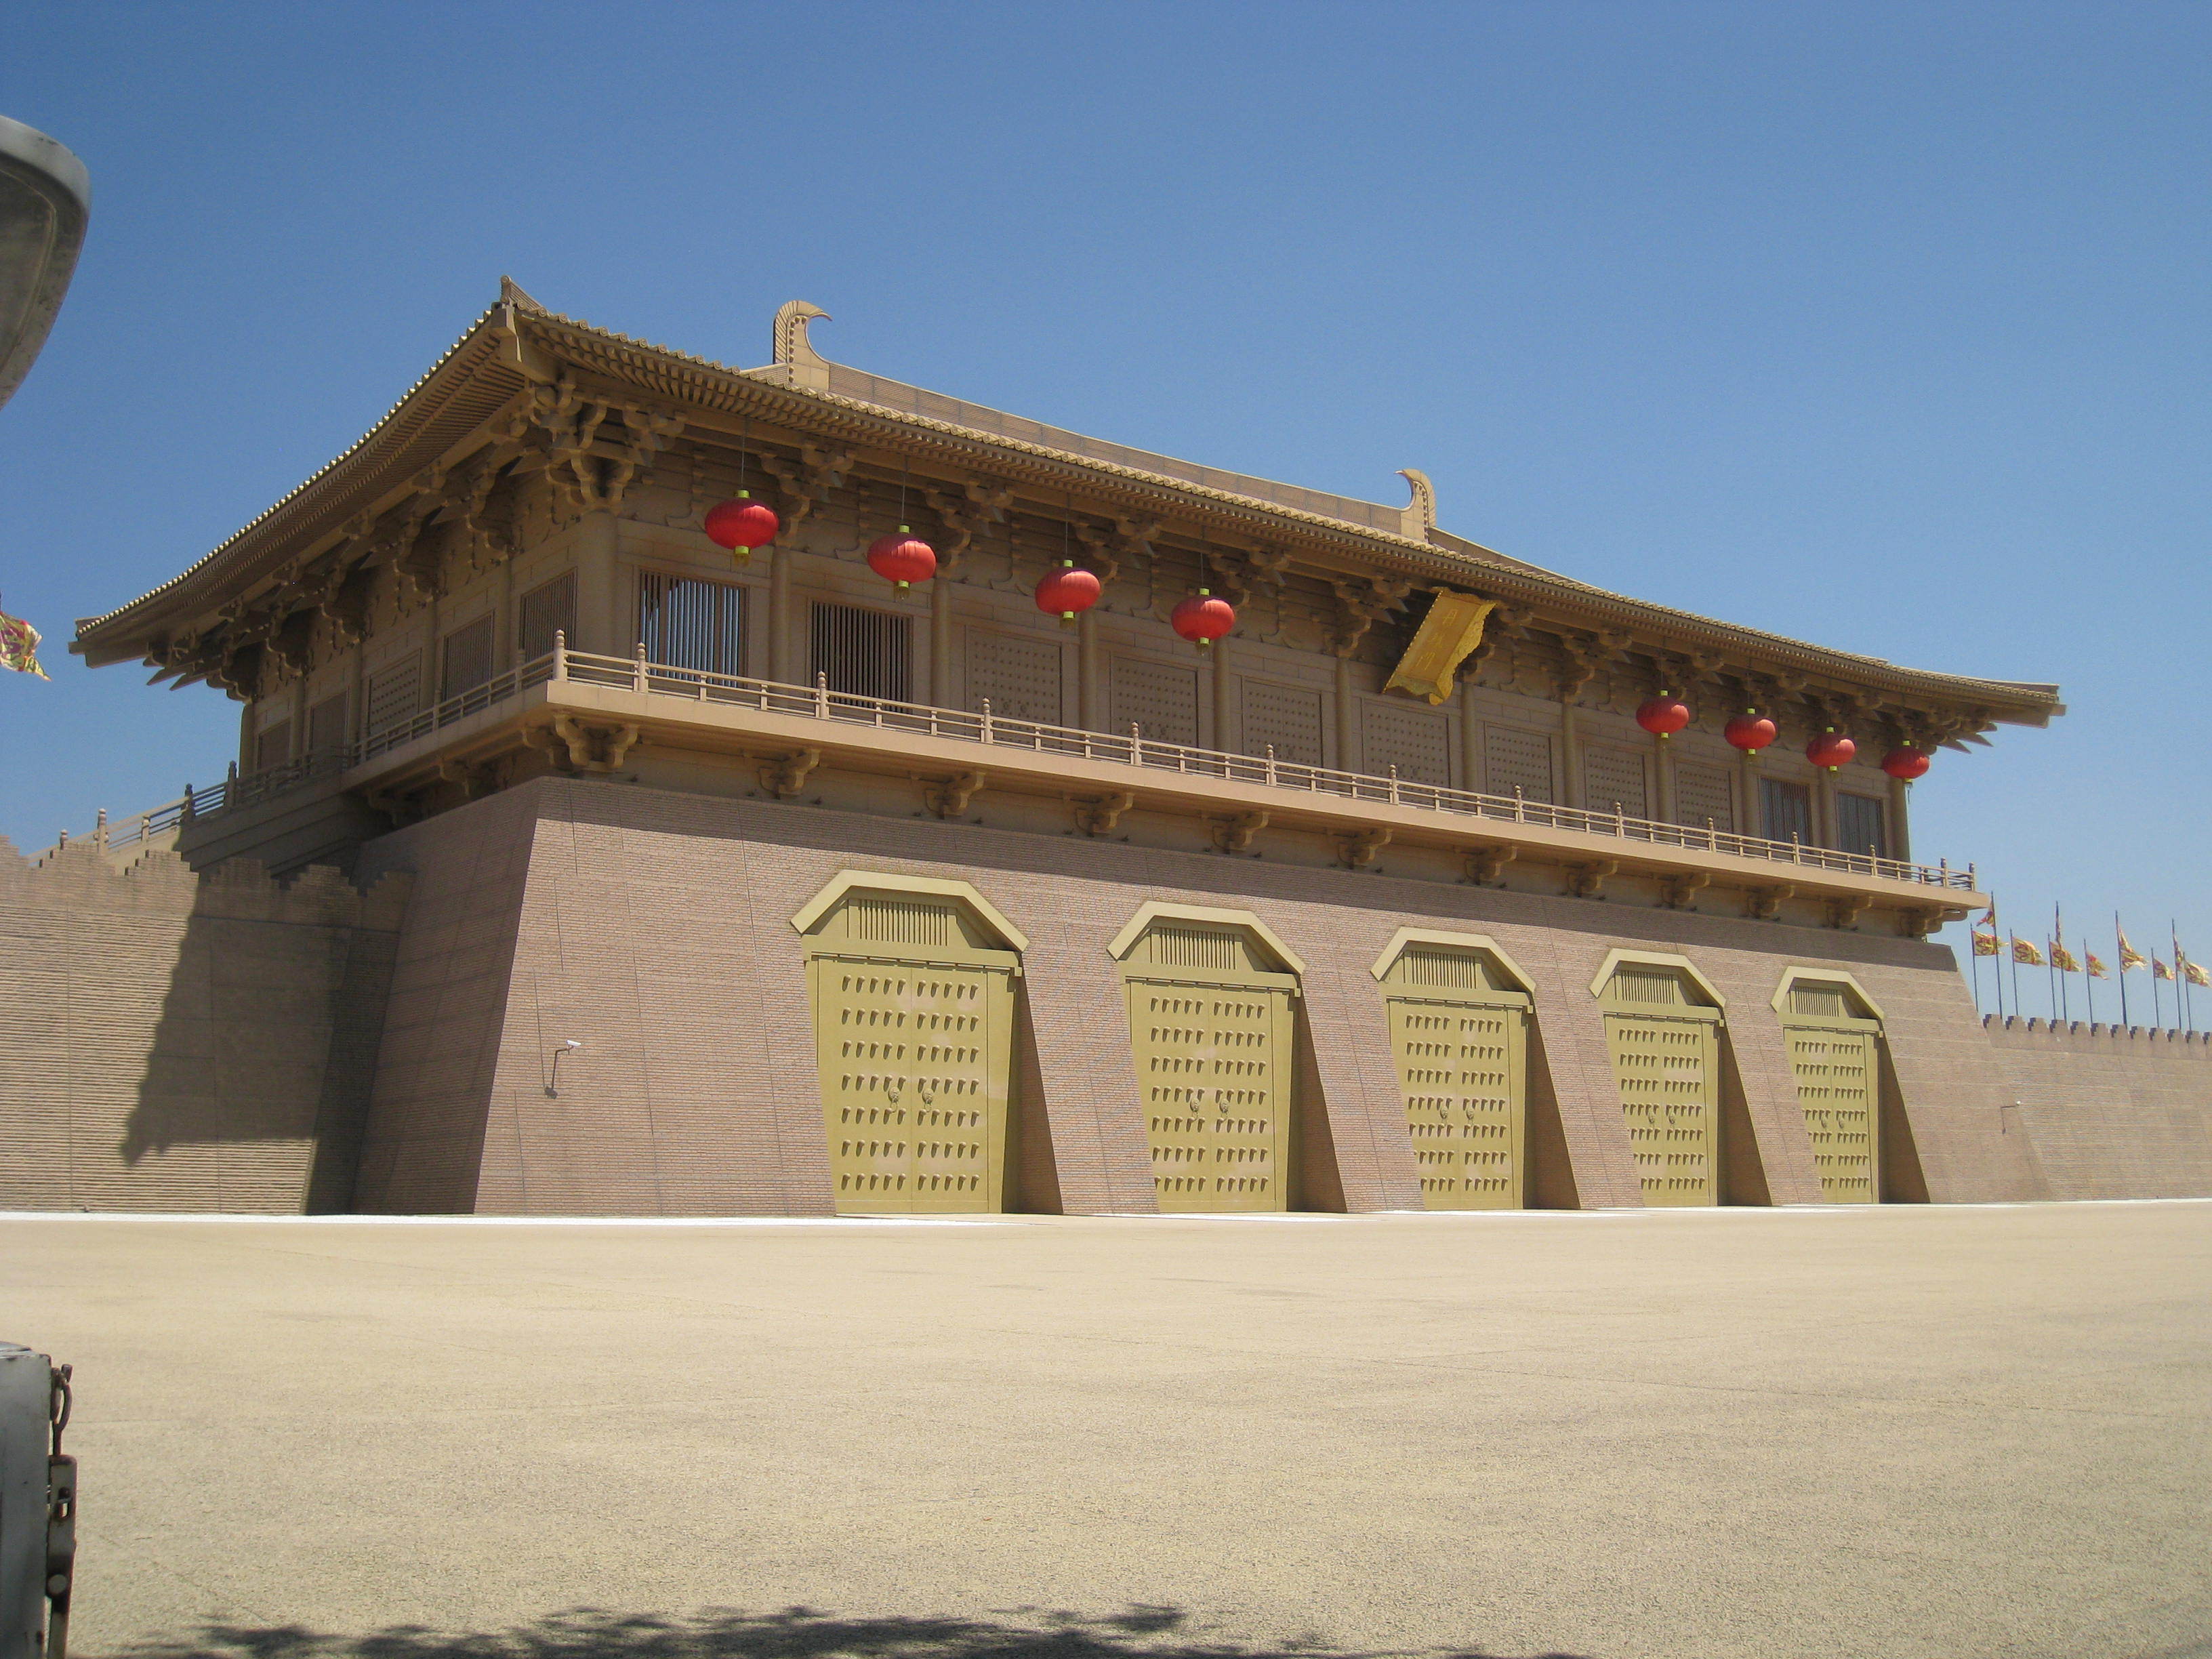 大明宫遗址是中华人民共和国,为第一批全国重点文物保护单位之一